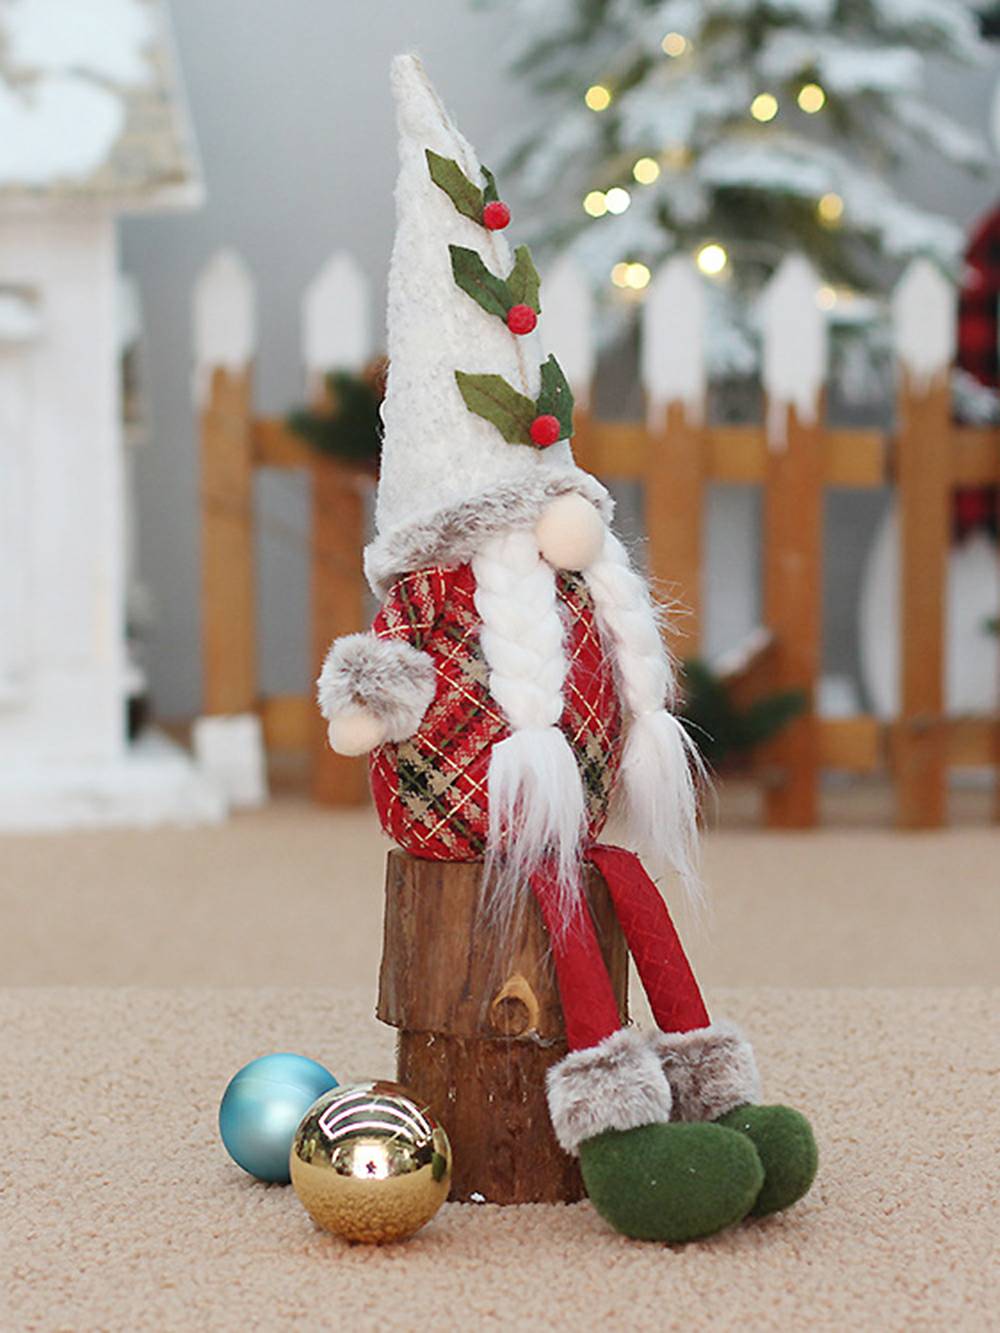 Rot karierte Weihnachtsbaumzwerg-Plüschpuppen mit sitzender und stehender Pose